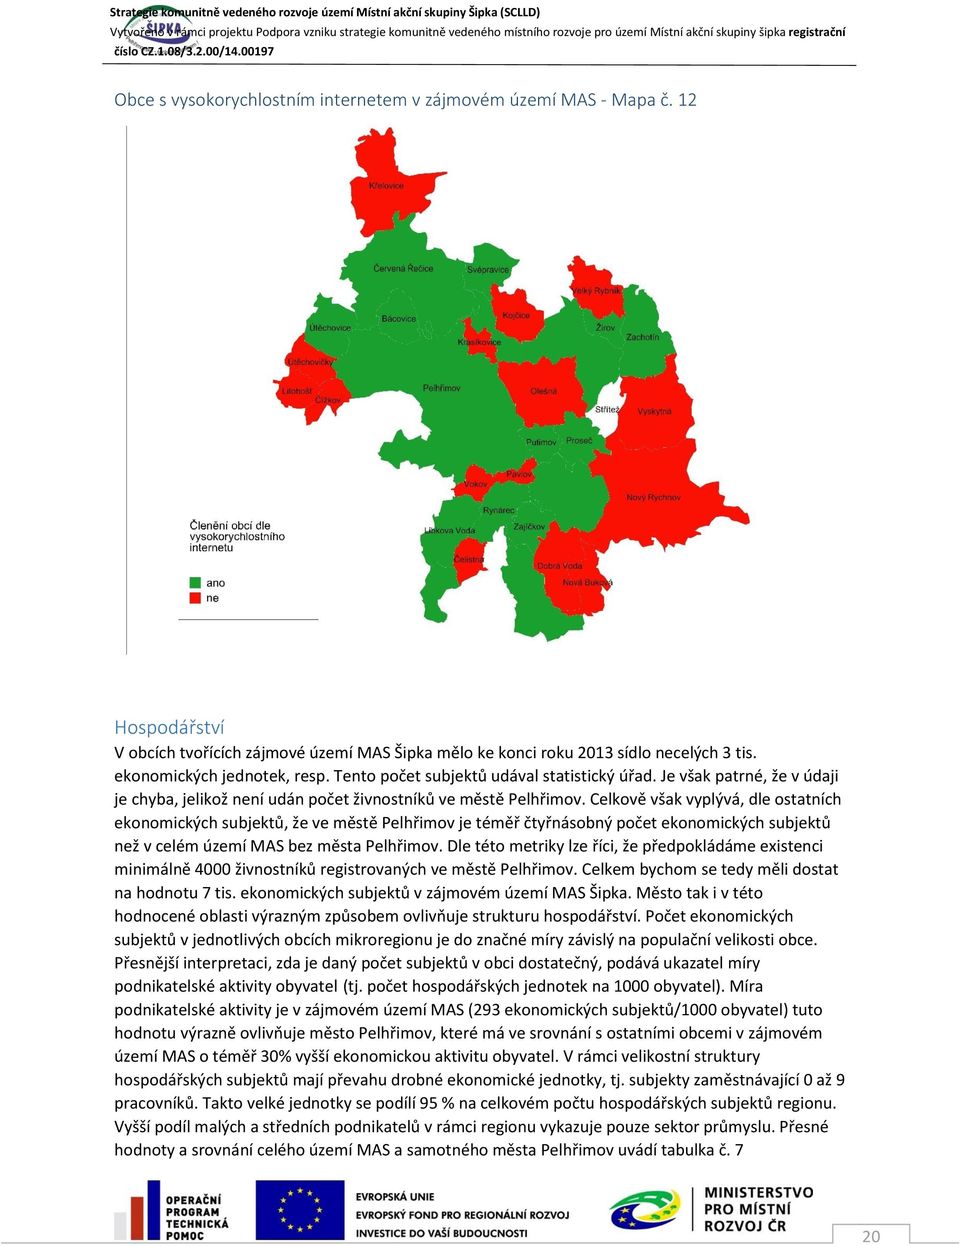 Celkově však vyplývá, dle ostatních ekonomických subjektů, že ve městě Pelhřimov je téměř čtyřnásobný počet ekonomických subjektů než v celém území MAS bez města Pelhřimov.